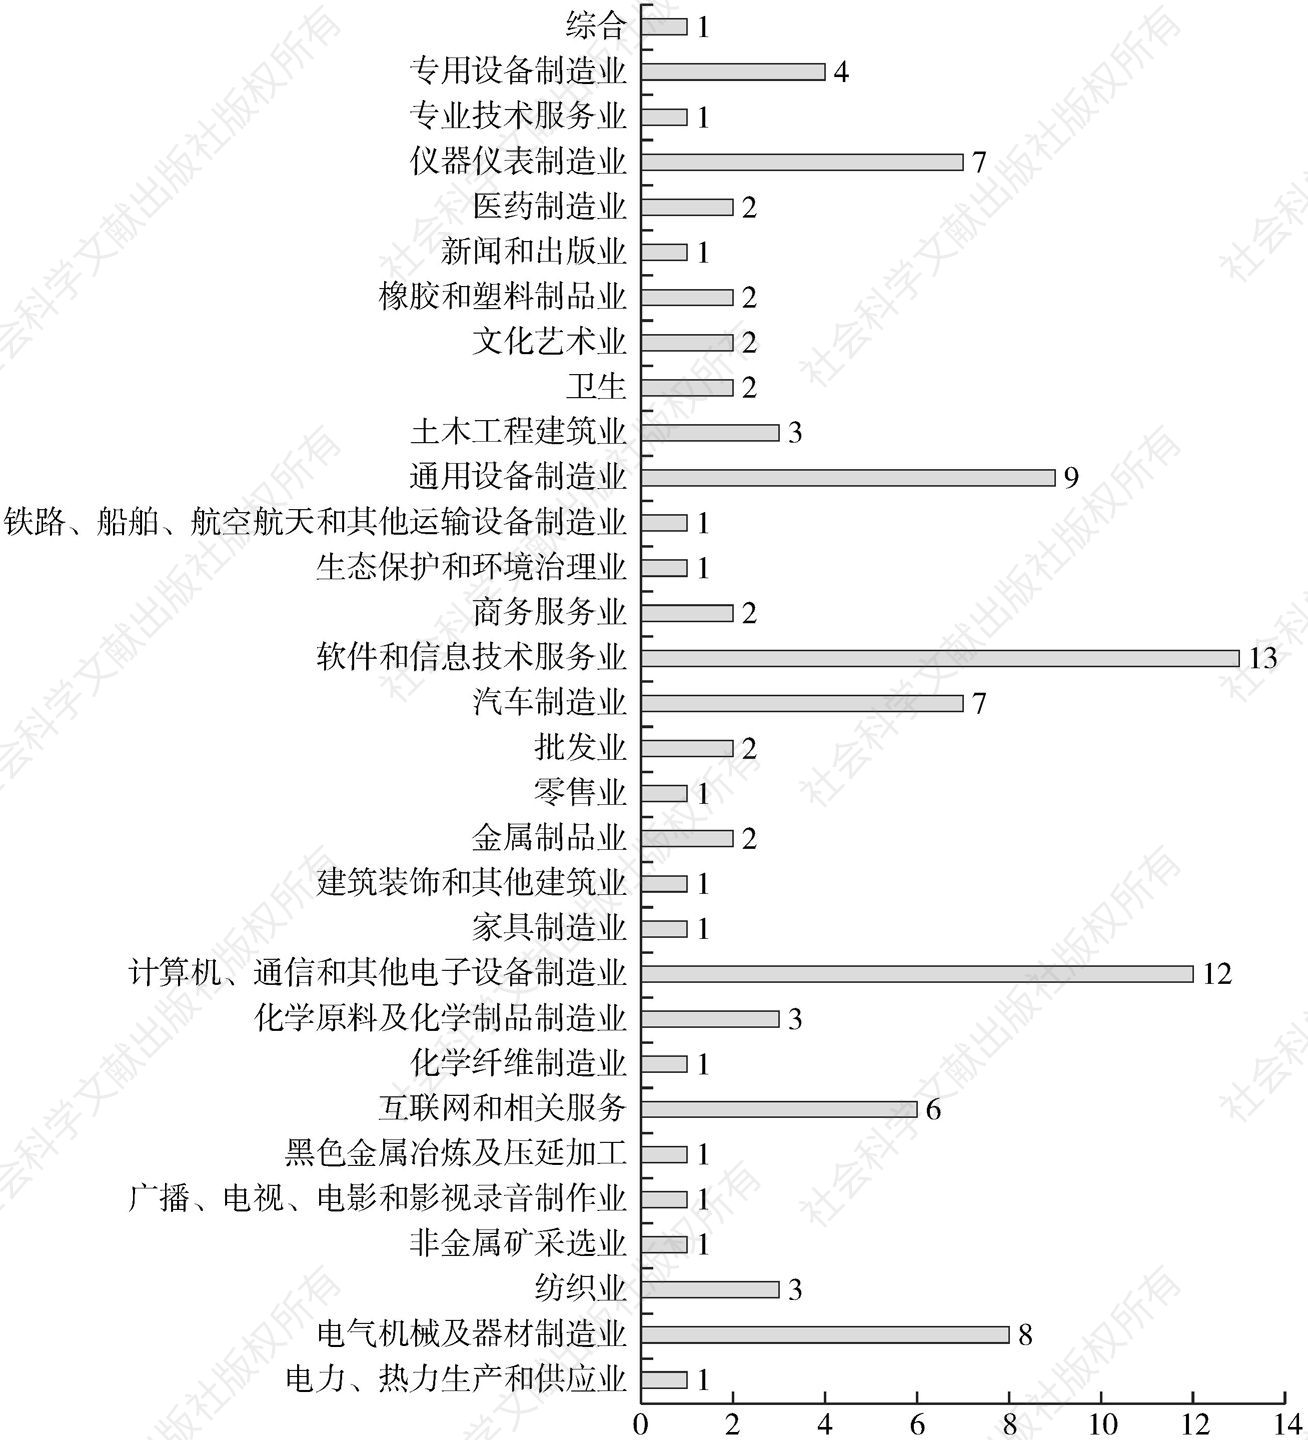 图9-4 杭州103家A股上市公司行业分布情况